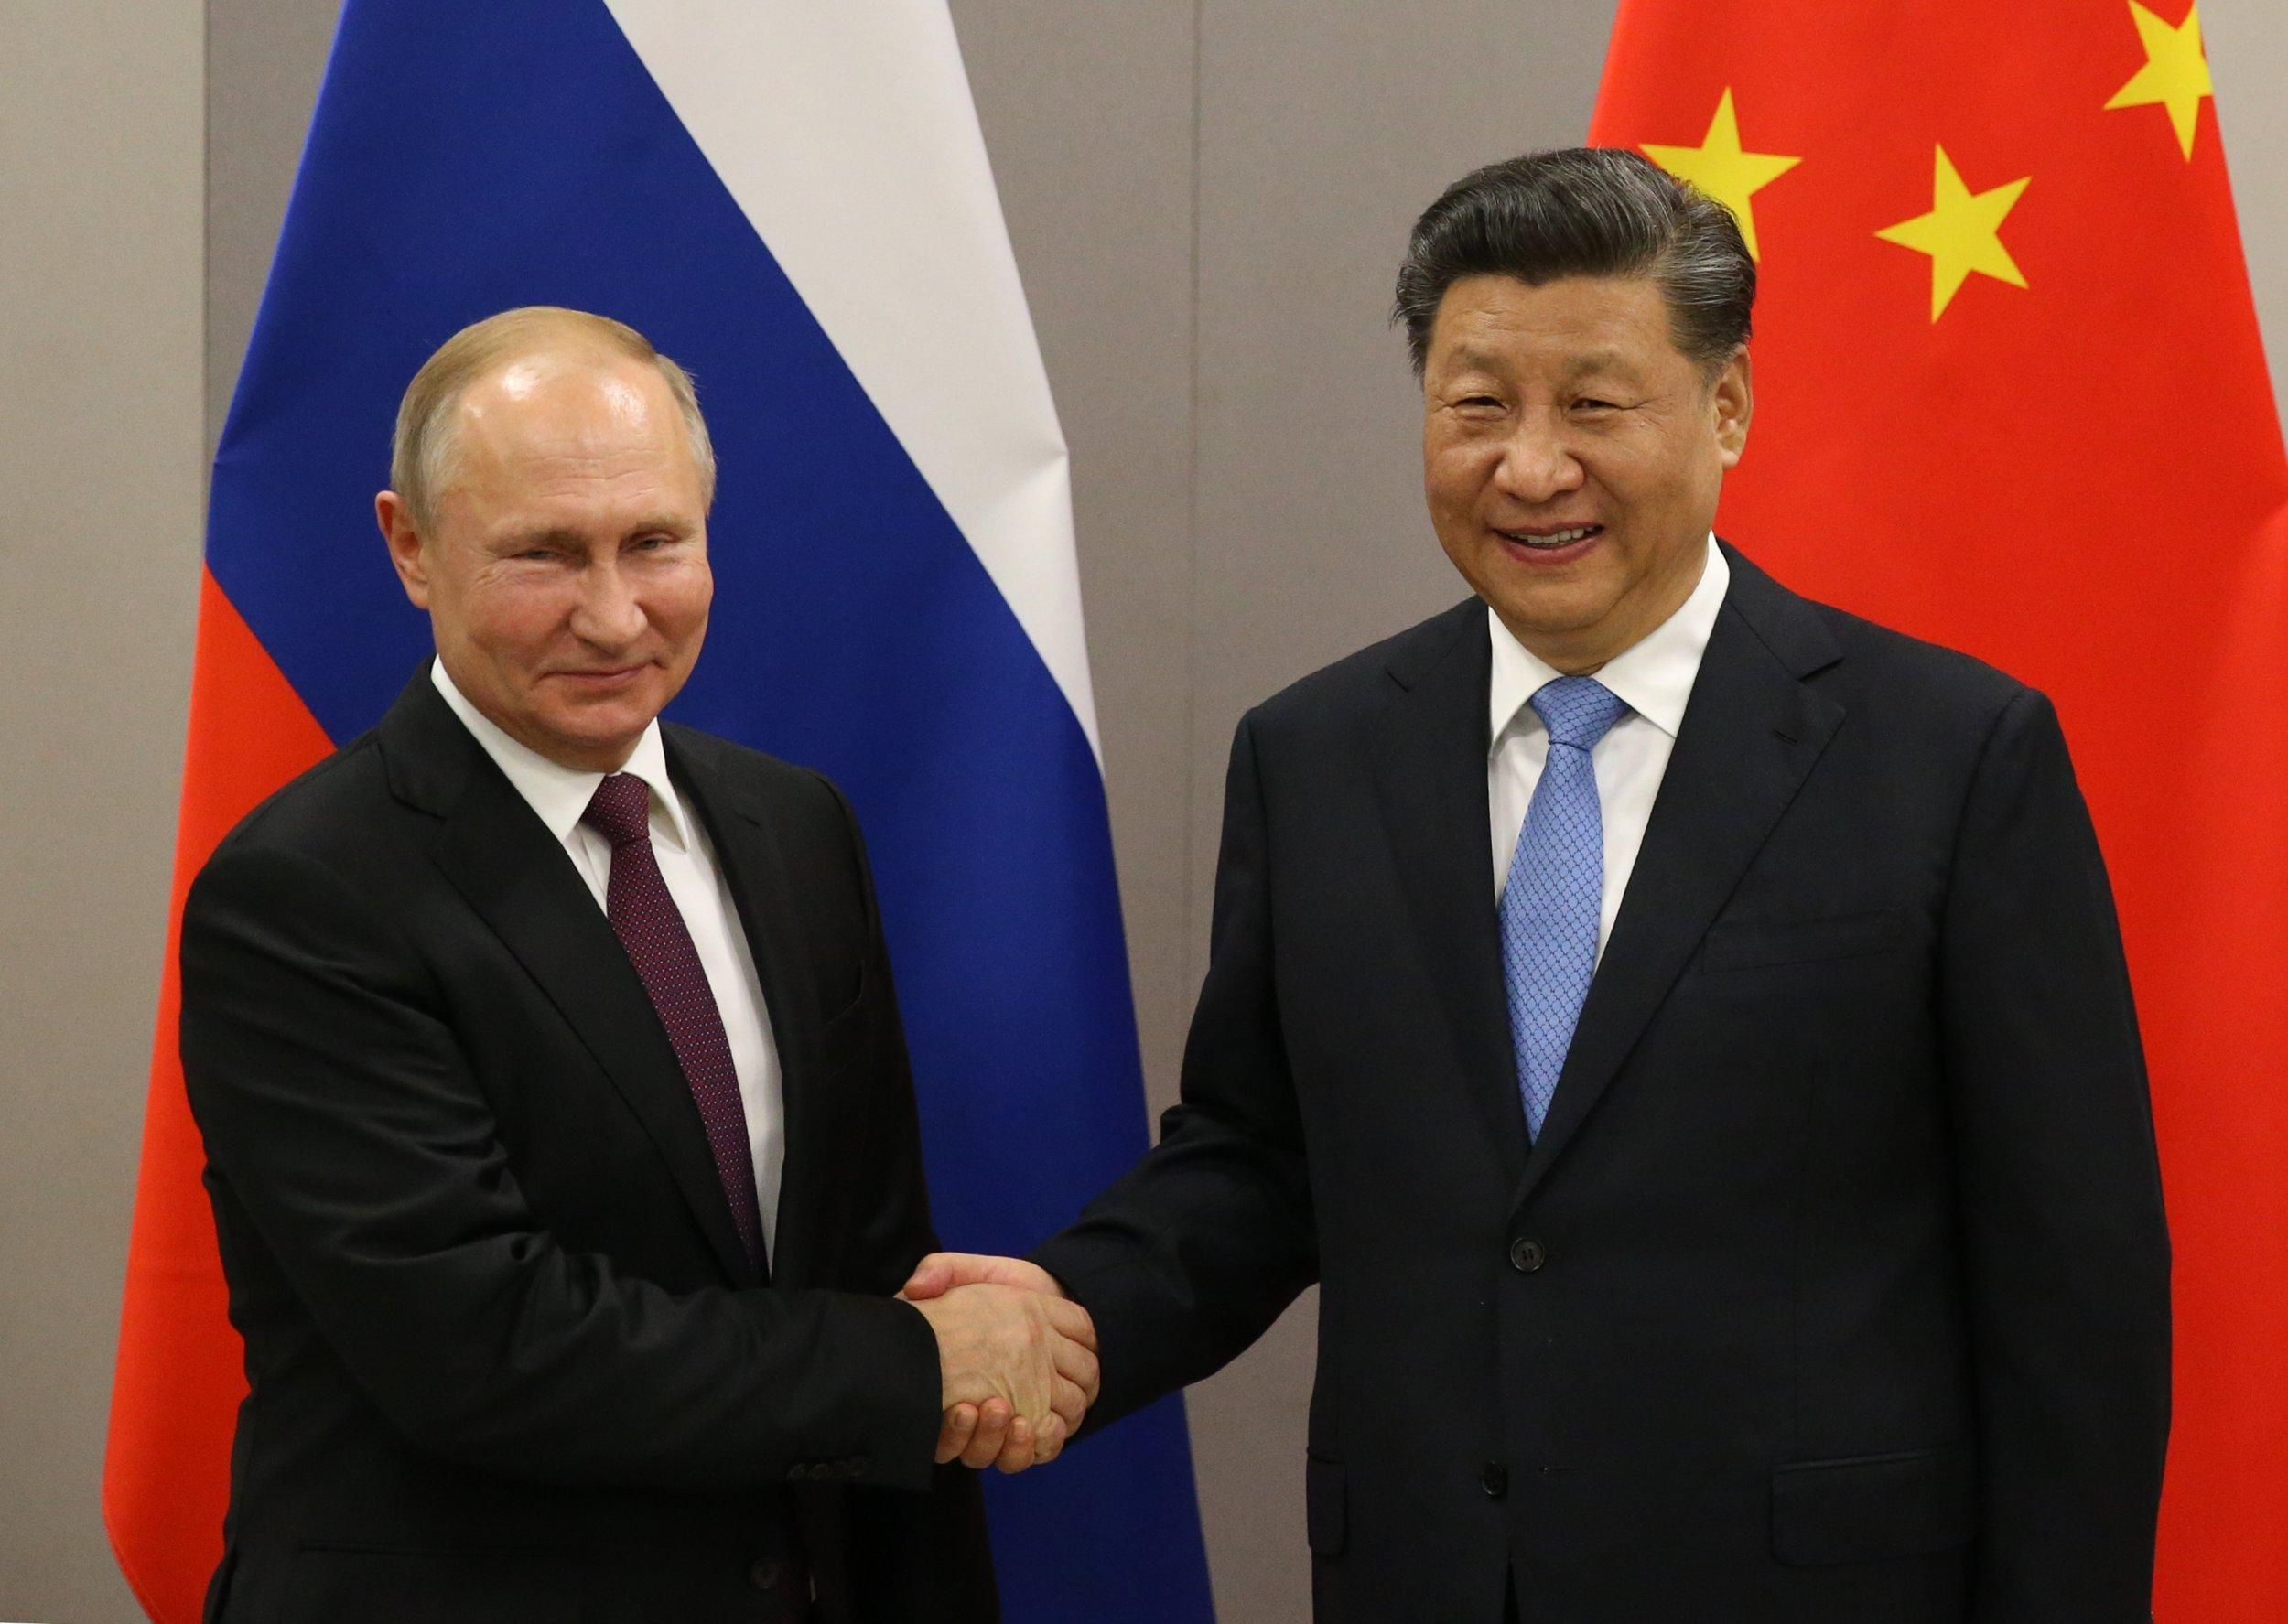 Обреченные на дружбу сквозь сжатые зубы, – политолог об отношениях Китая и России